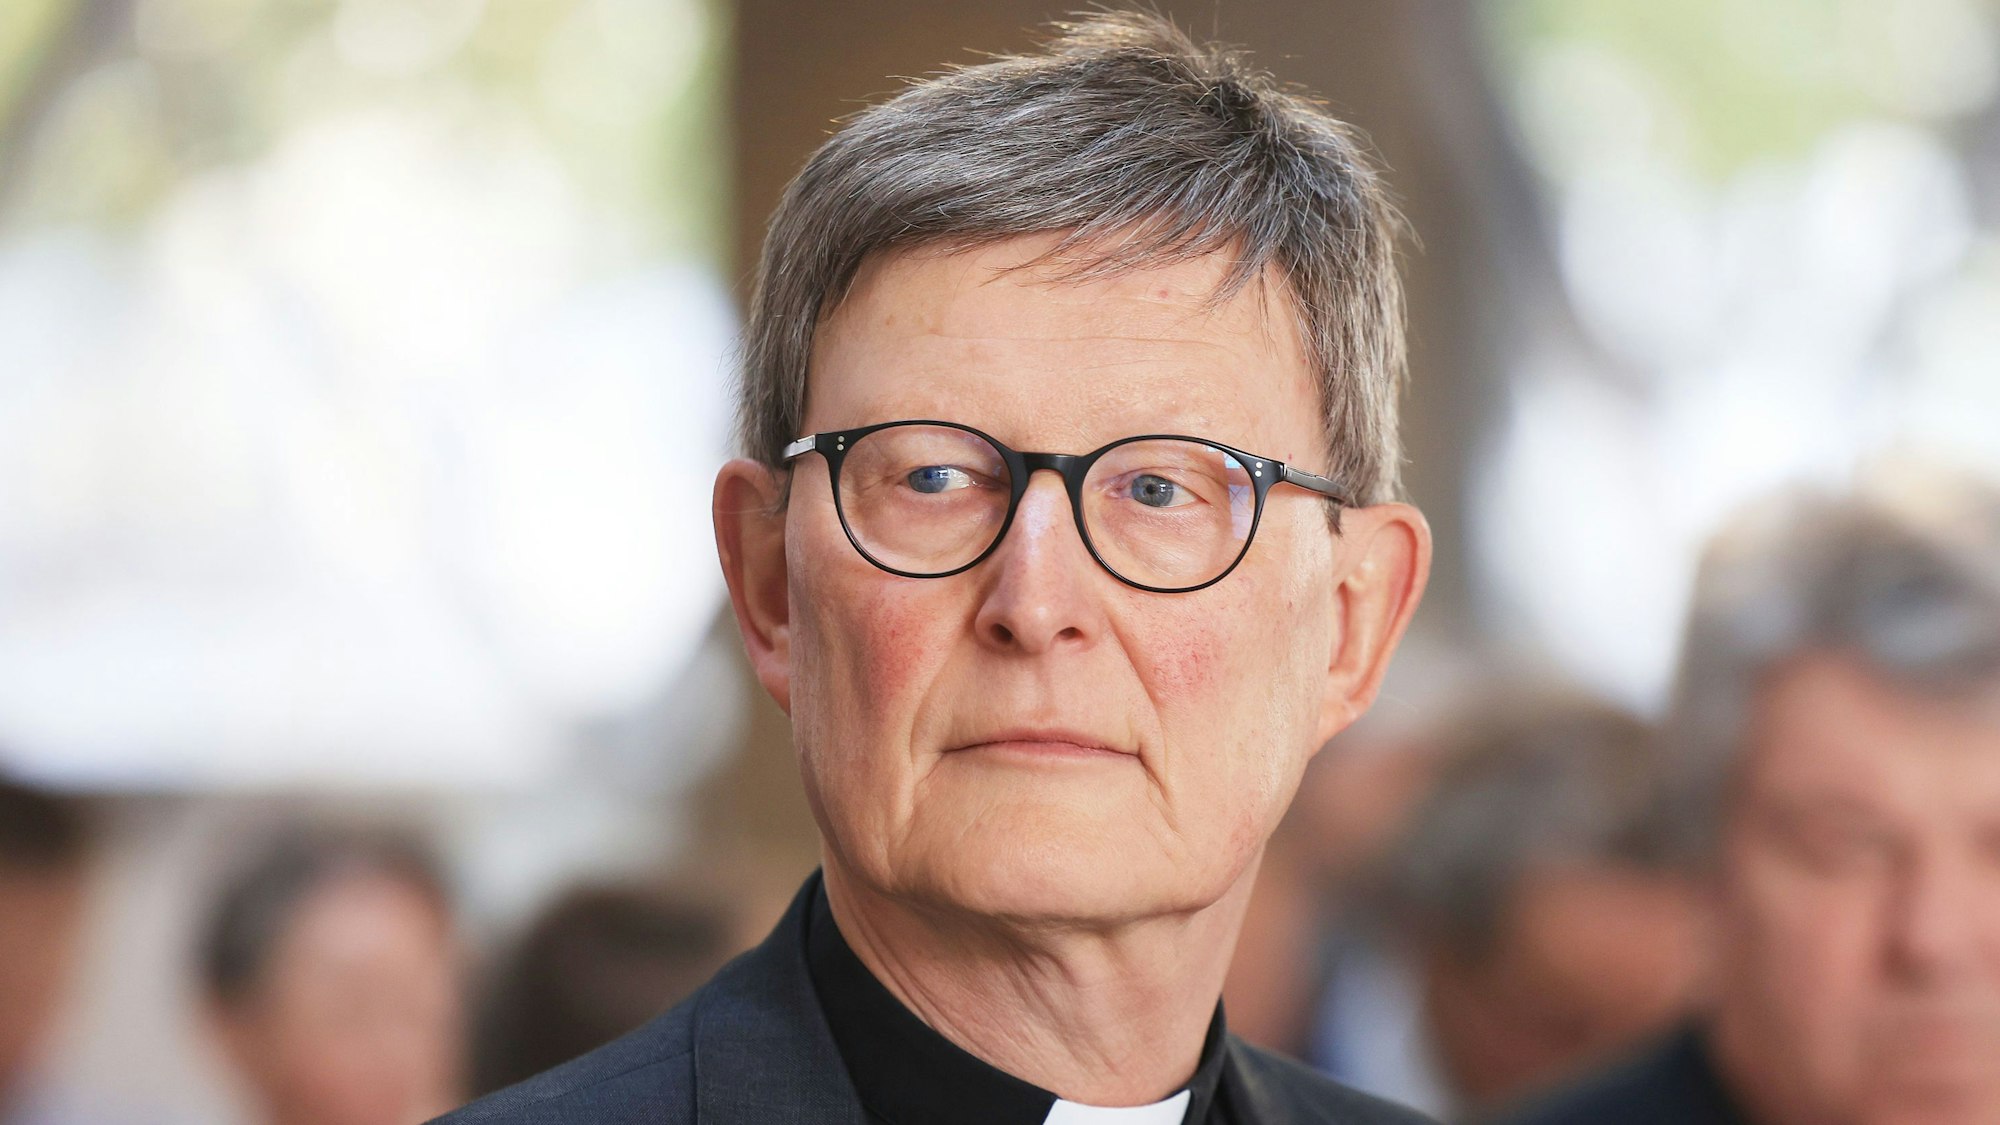 Köln: Rainer Maria Woelki, Kardinal von Köln, steht im Zentrum der Aufklärungsarbeit zum Missbrauchsskandal der Kirche. Die SPD fordert eine unabhängige Aufarbeitung auf gesetzlicher Grundlage.